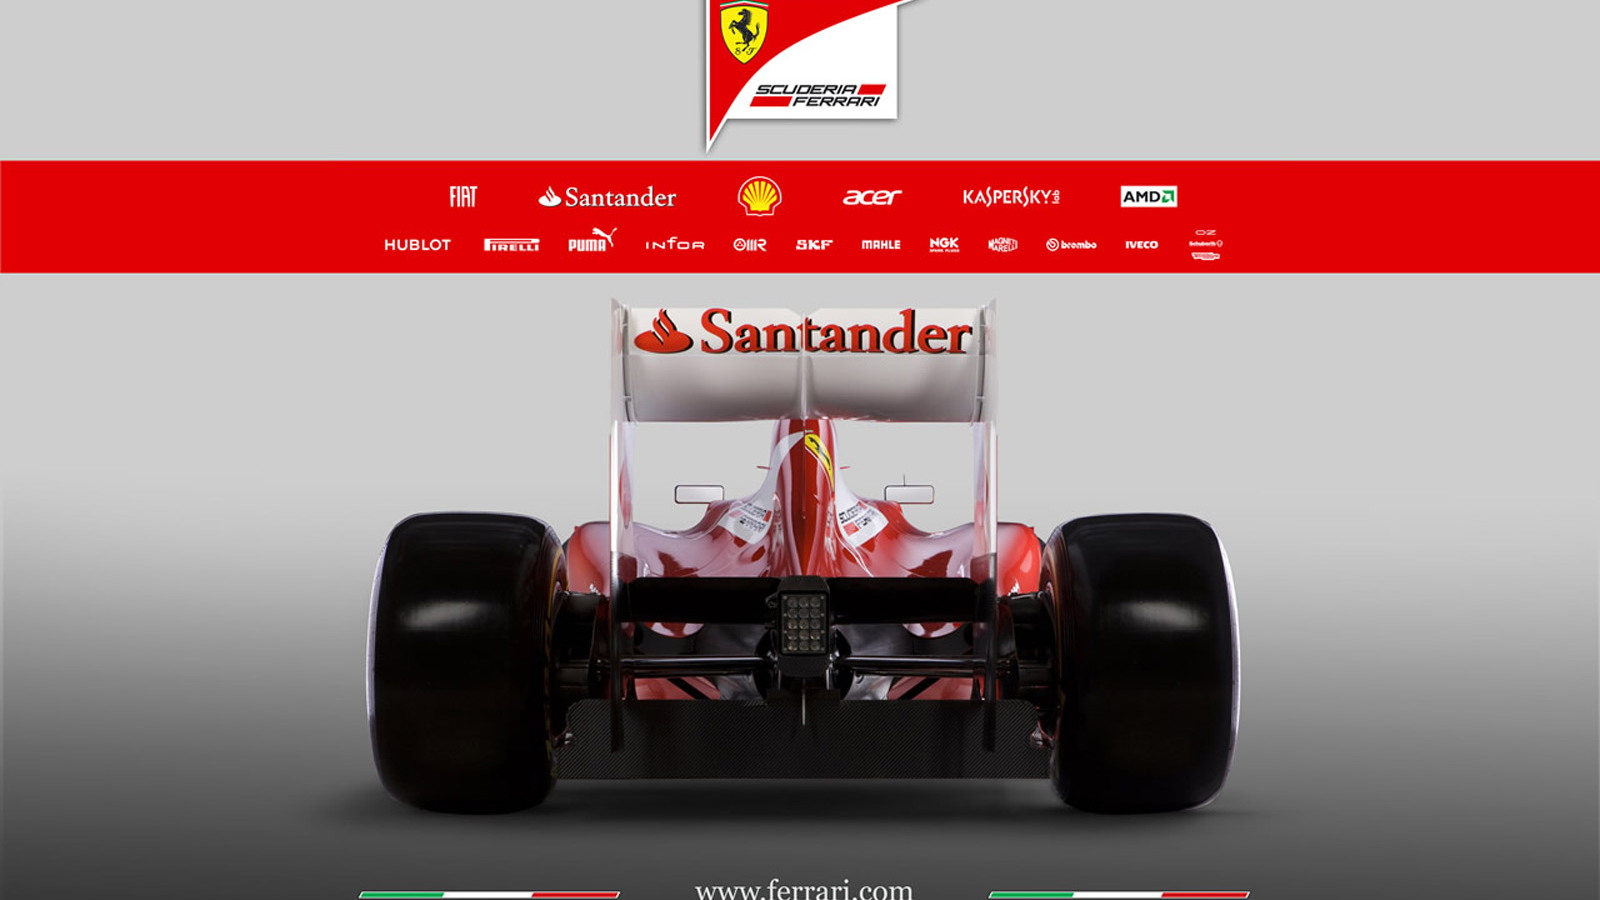 Ferrari F2012 2012 Formula 1 race car